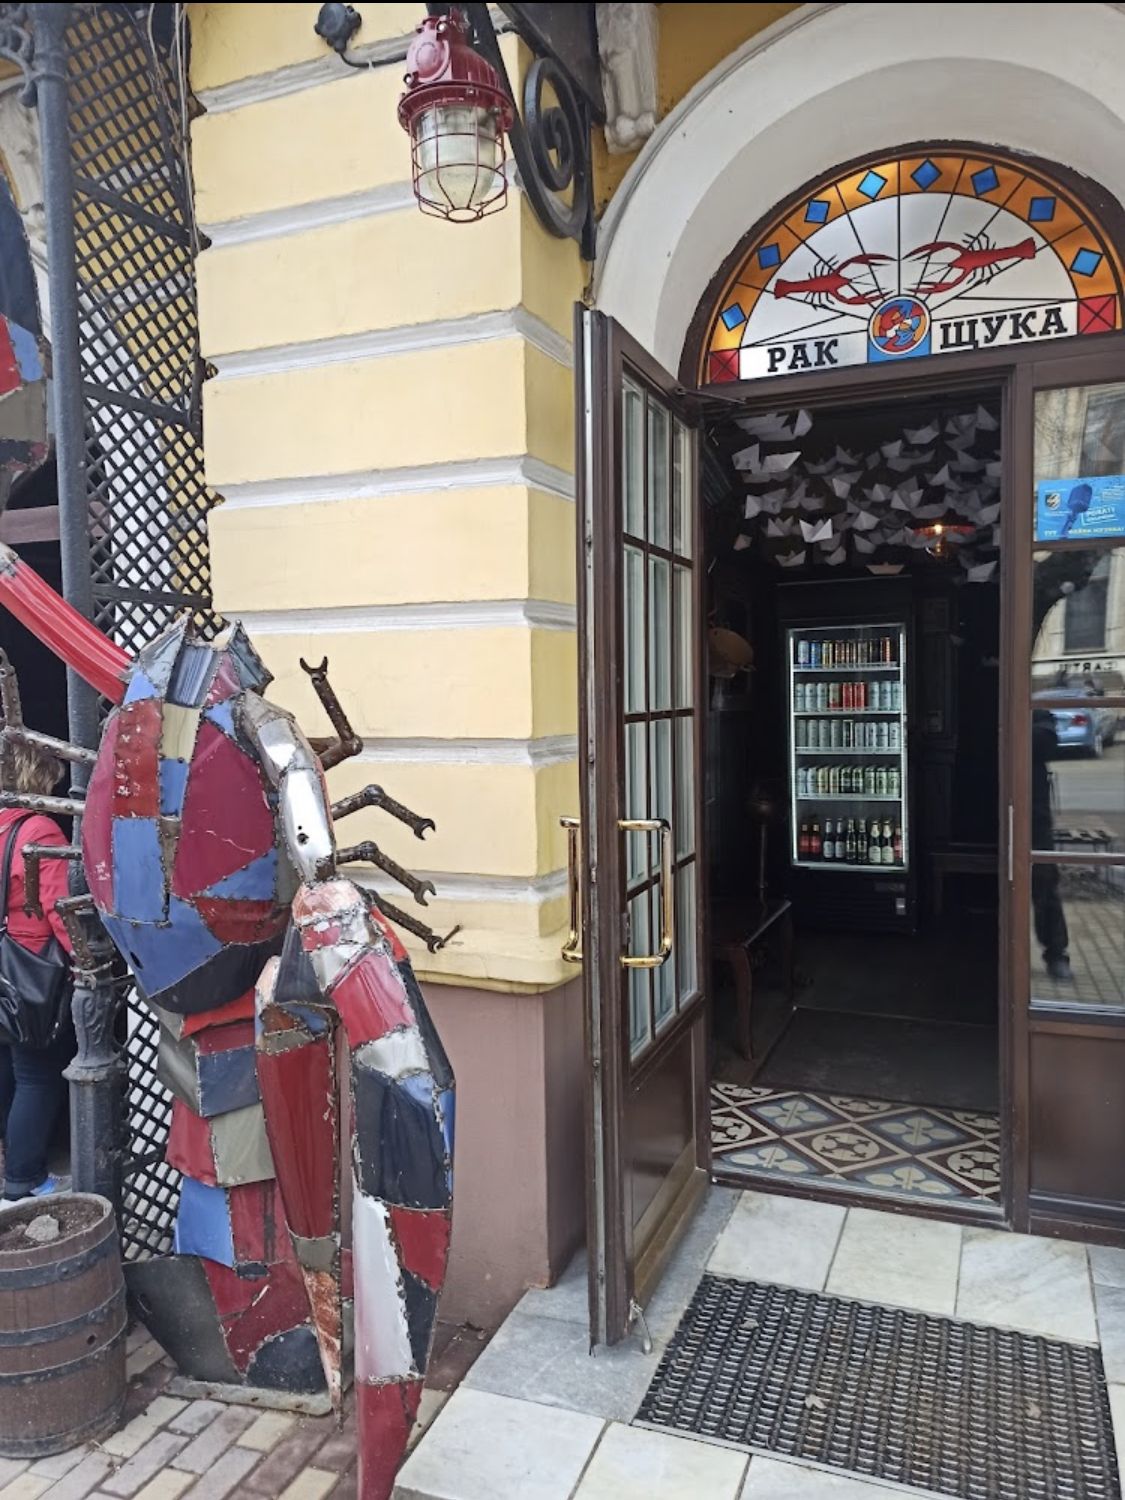 В продаже помещение ресторана на ул.Жуковского